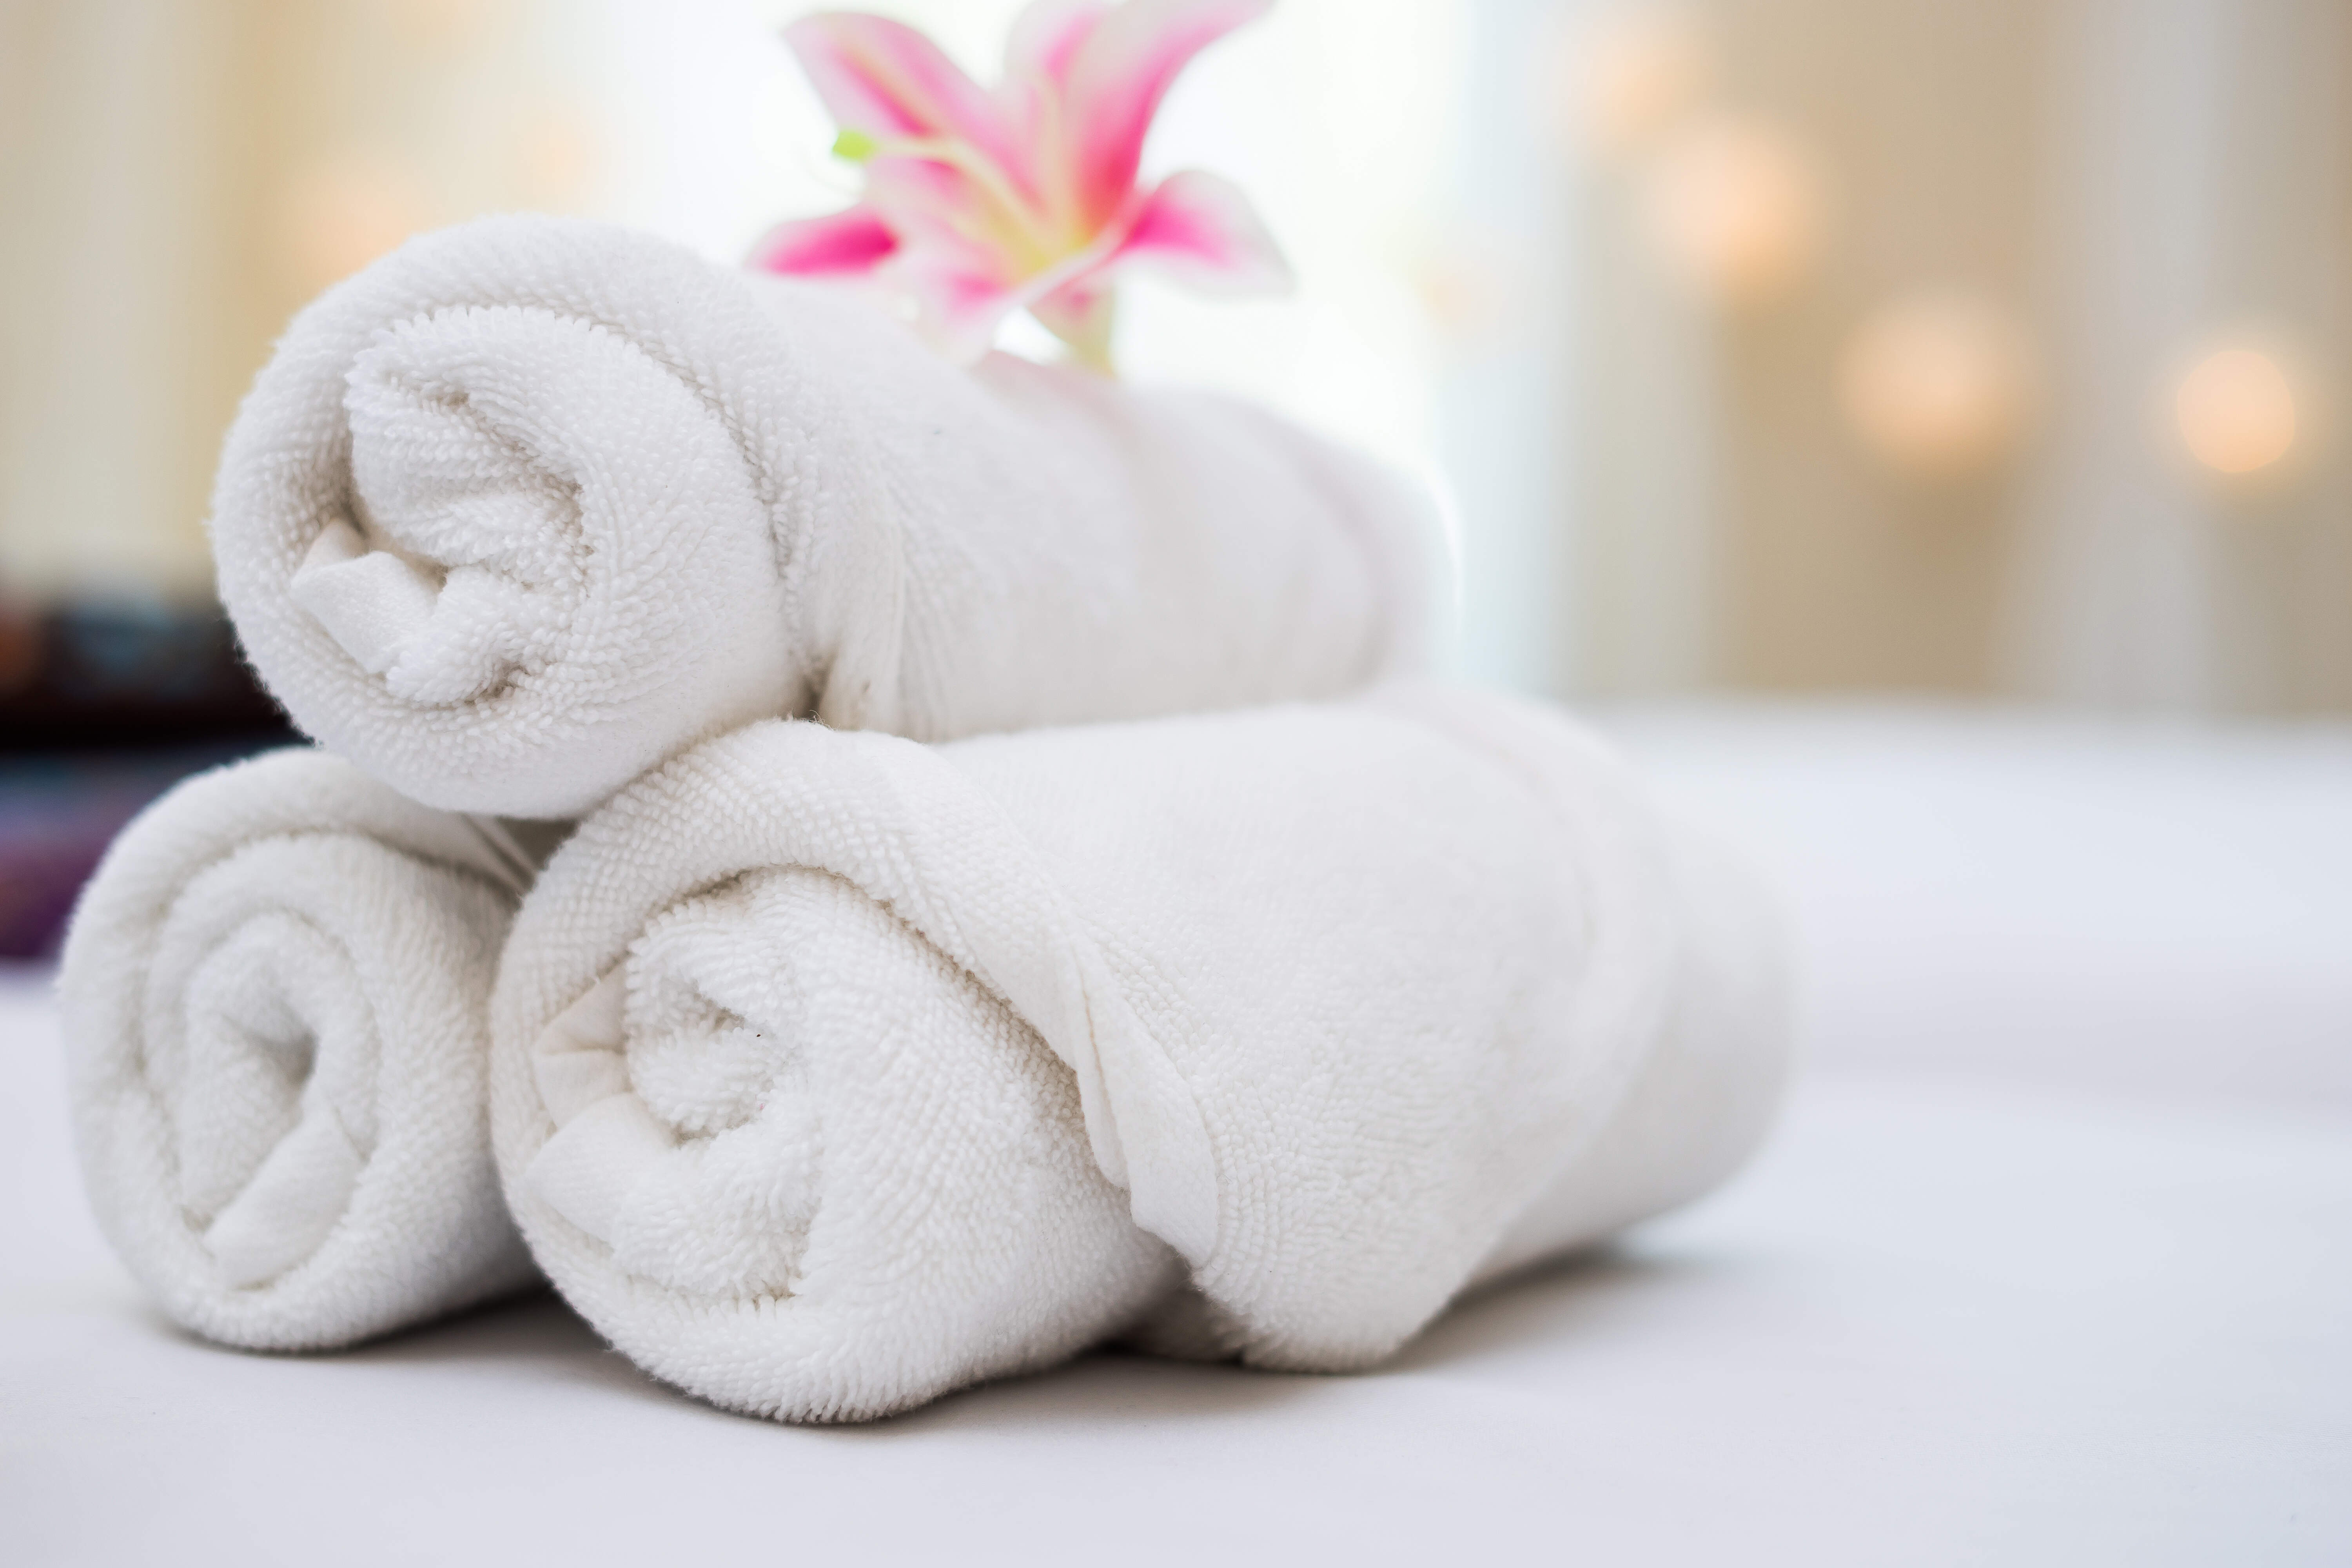 ¿Cómo lavar correctamente las toallas?